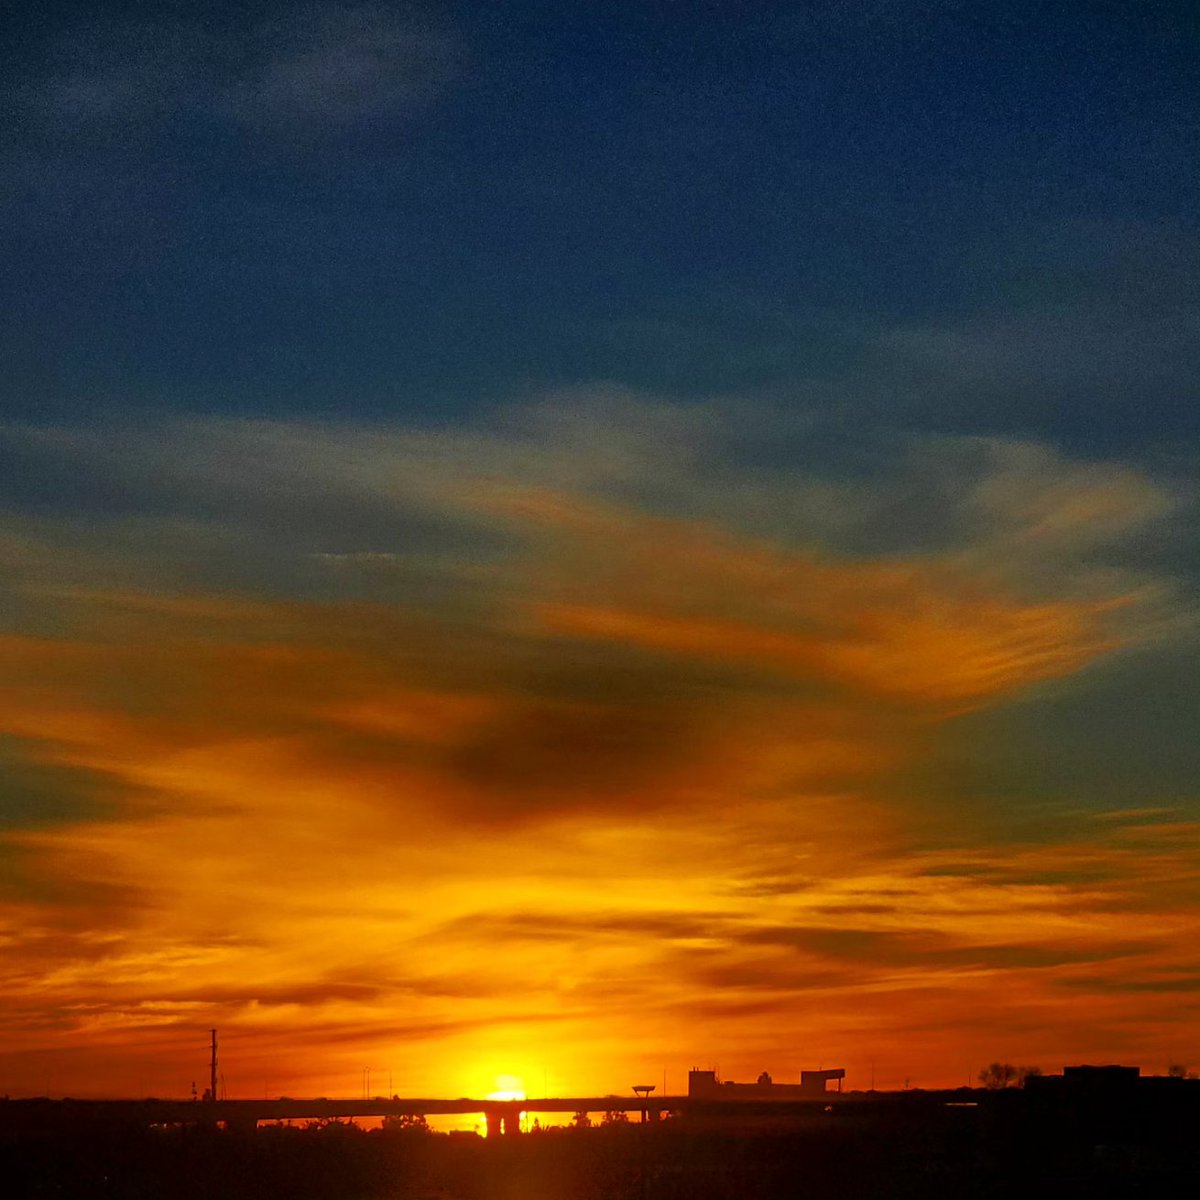 #goldenhour #lahoradorada #skyorange #ThePhotoHour #zenfolio #canonphotography #sunsetphotography #sunsetlovers #PhotographyIsArt #gallery #artgallery #amazing_captures #amazing_sunsets